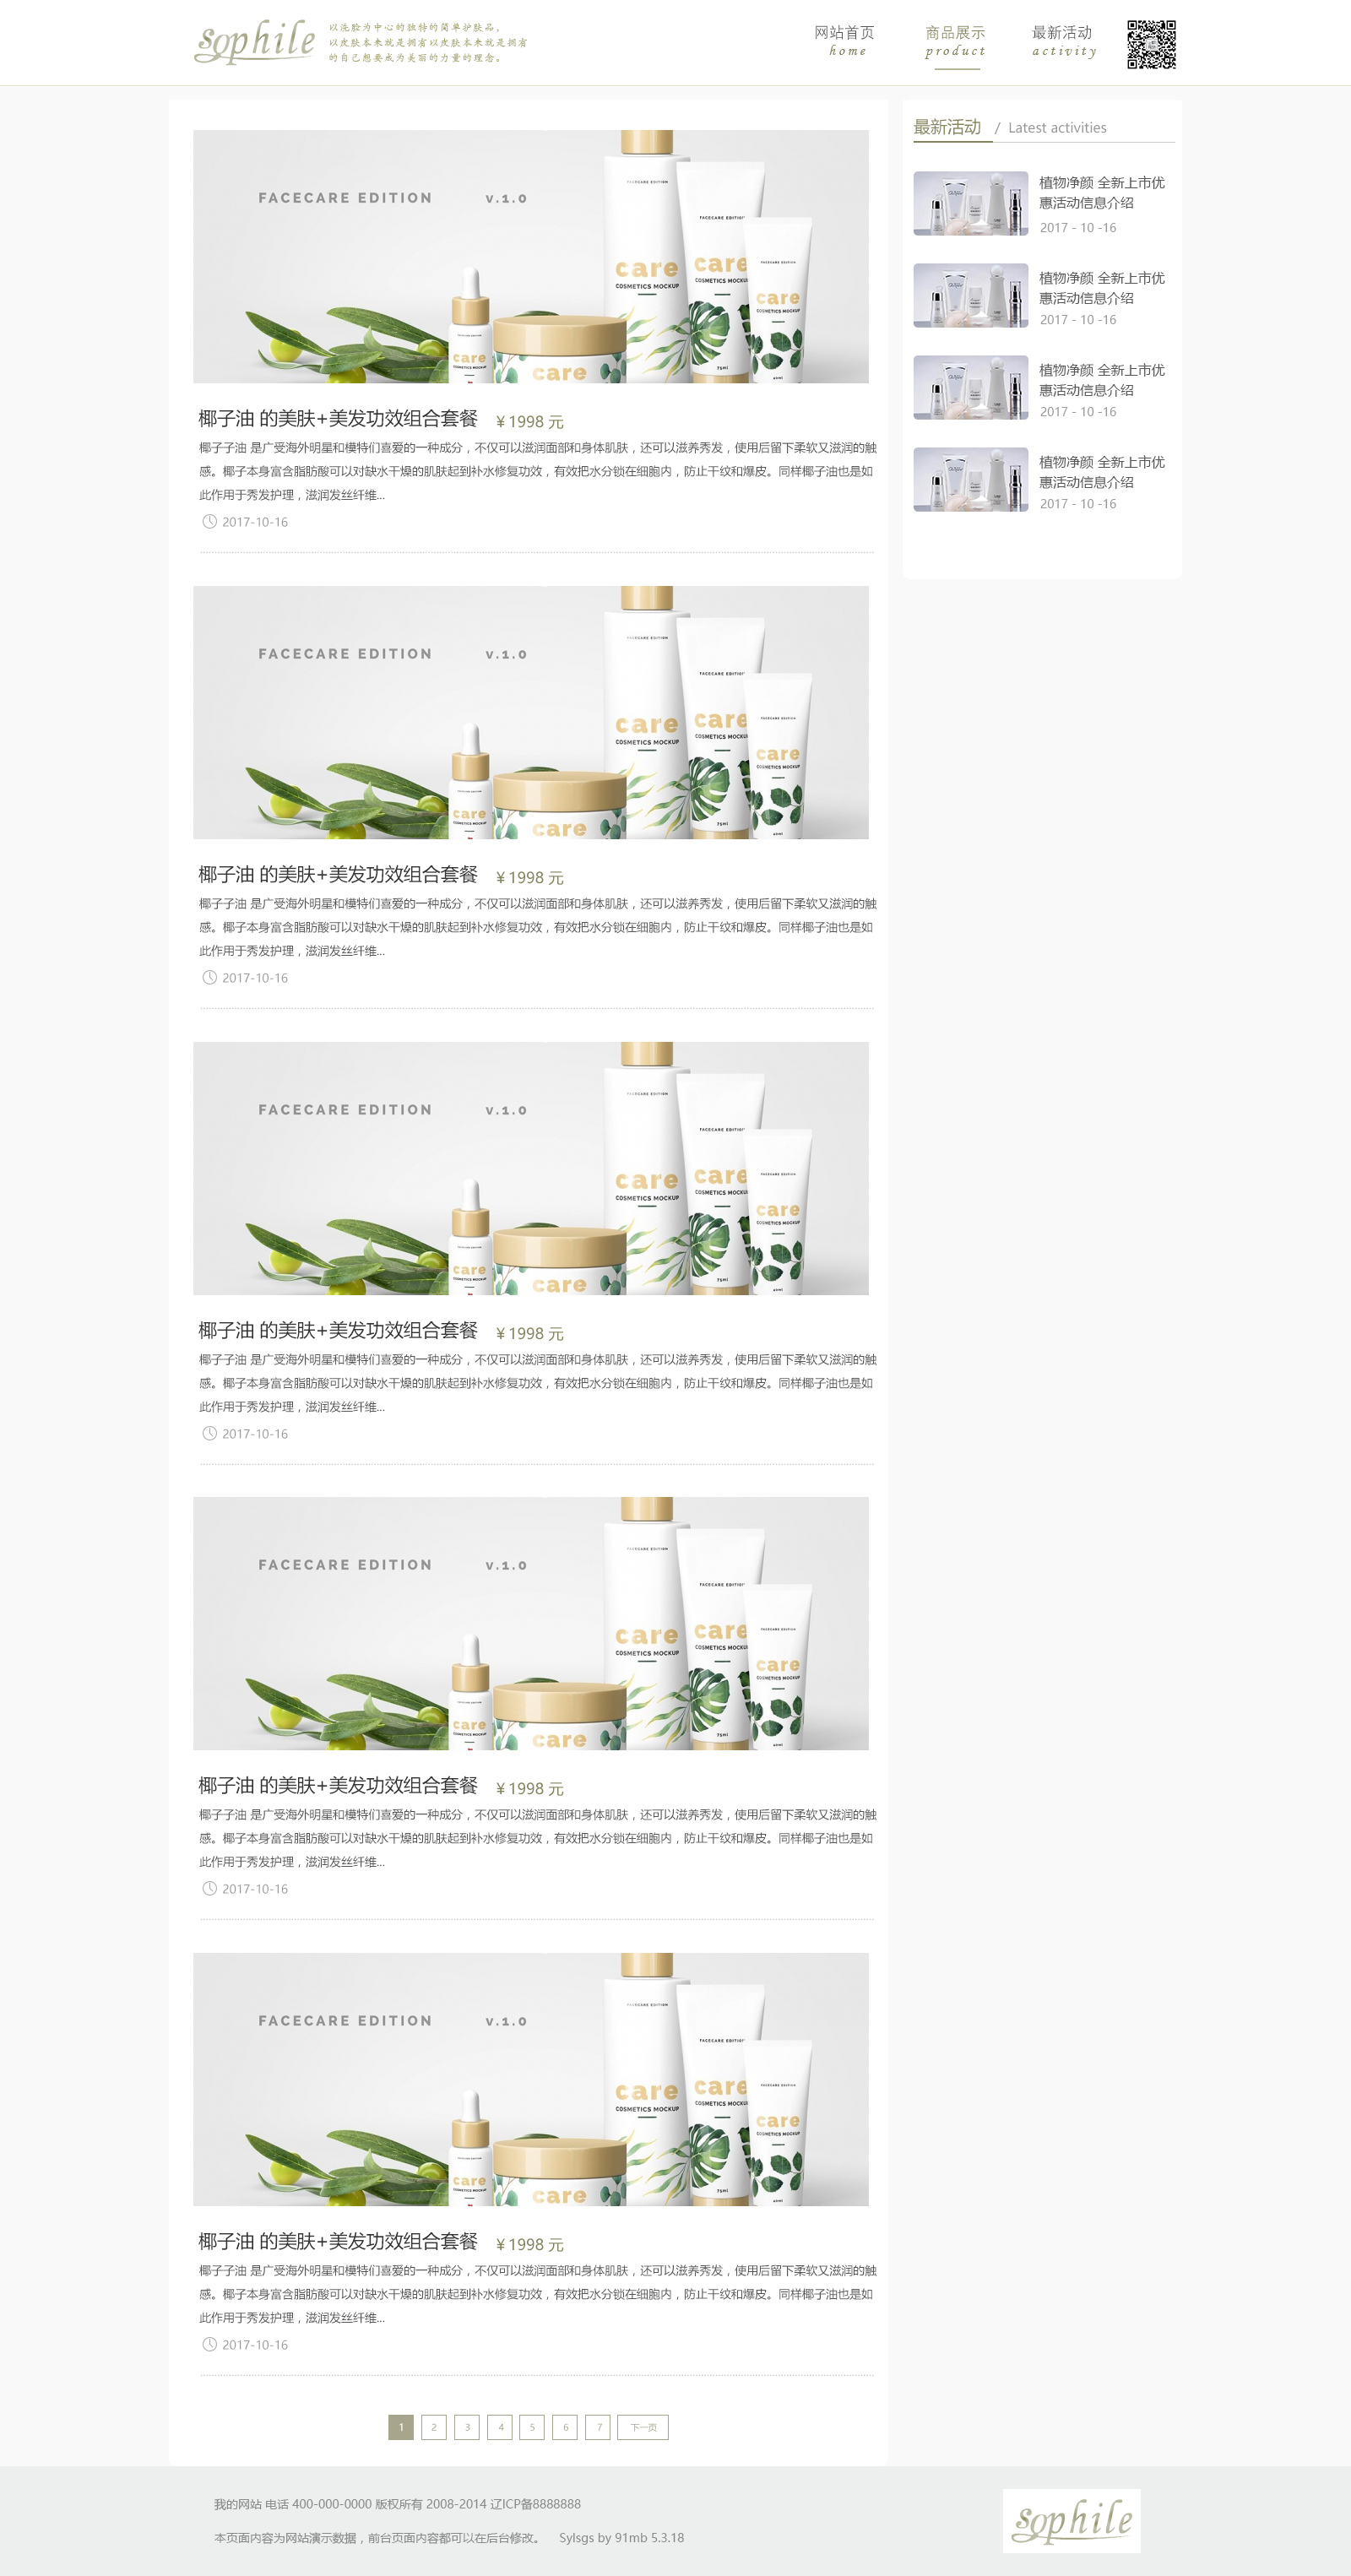 日本sophile化妆品网站_网站制作案例展示2